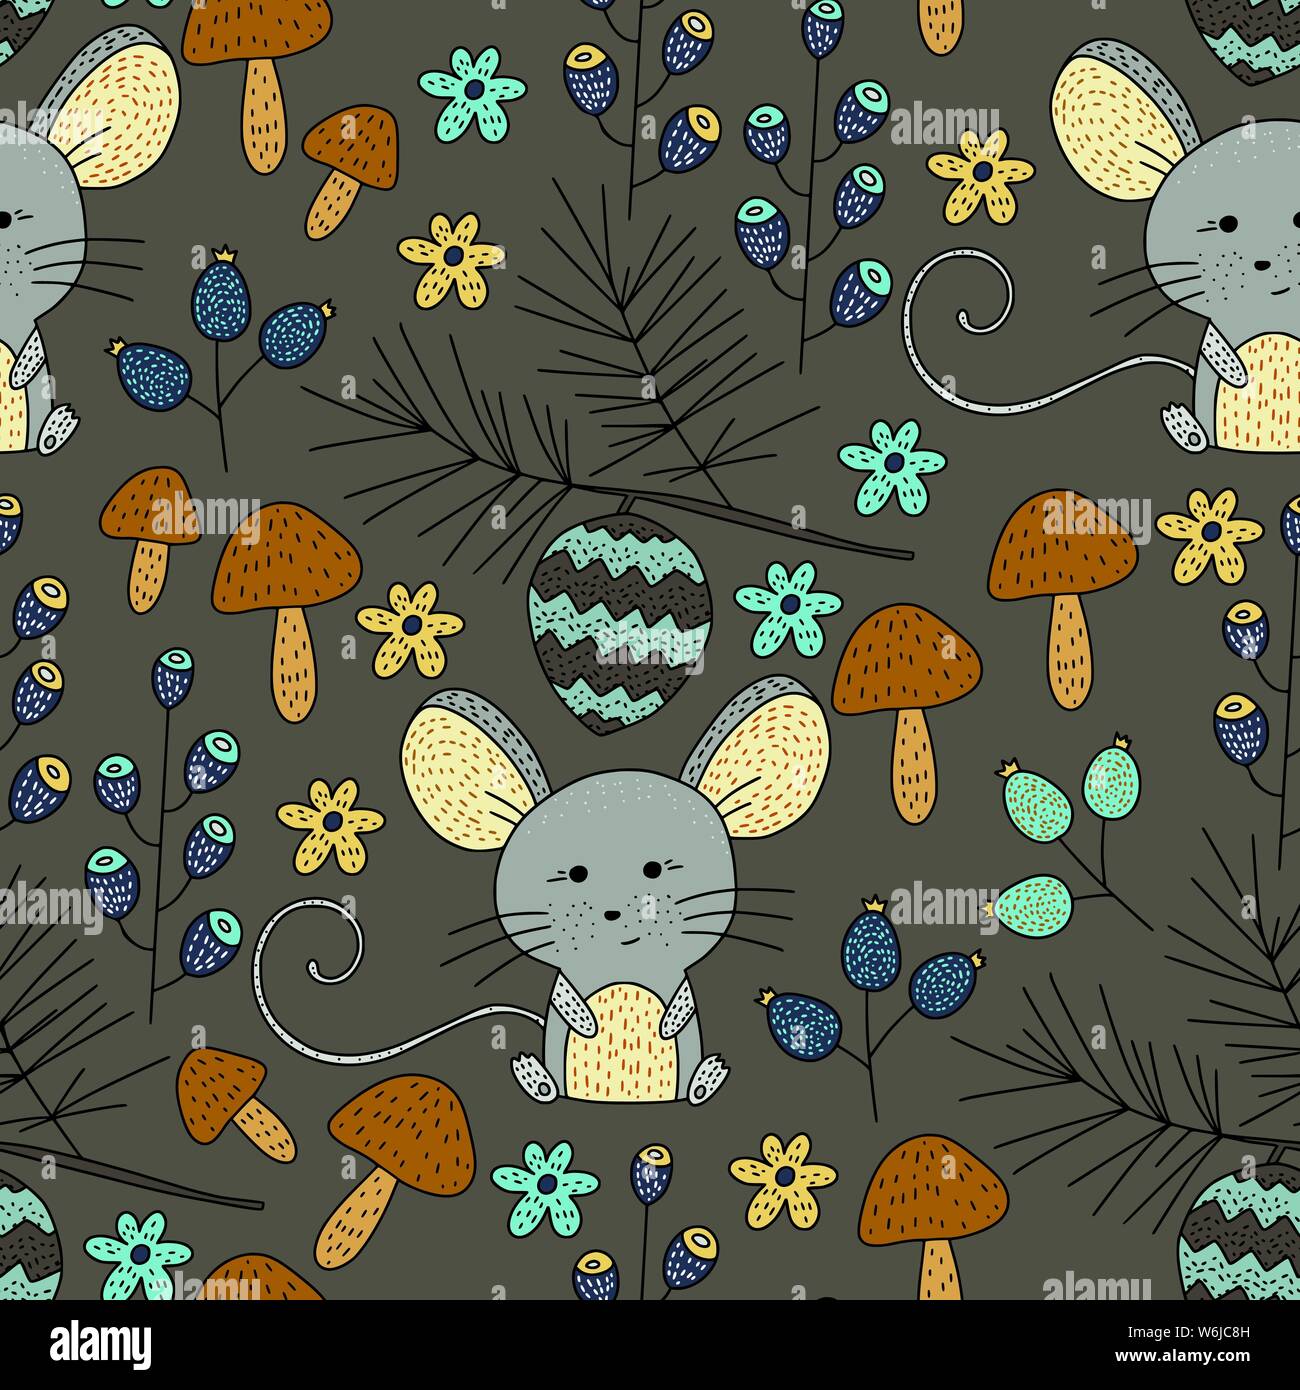 Die nahtlose Vektor Holz- Muster mit farbigen Abbildungen. Сute Wald Maus in den Wald. Stock Vektor